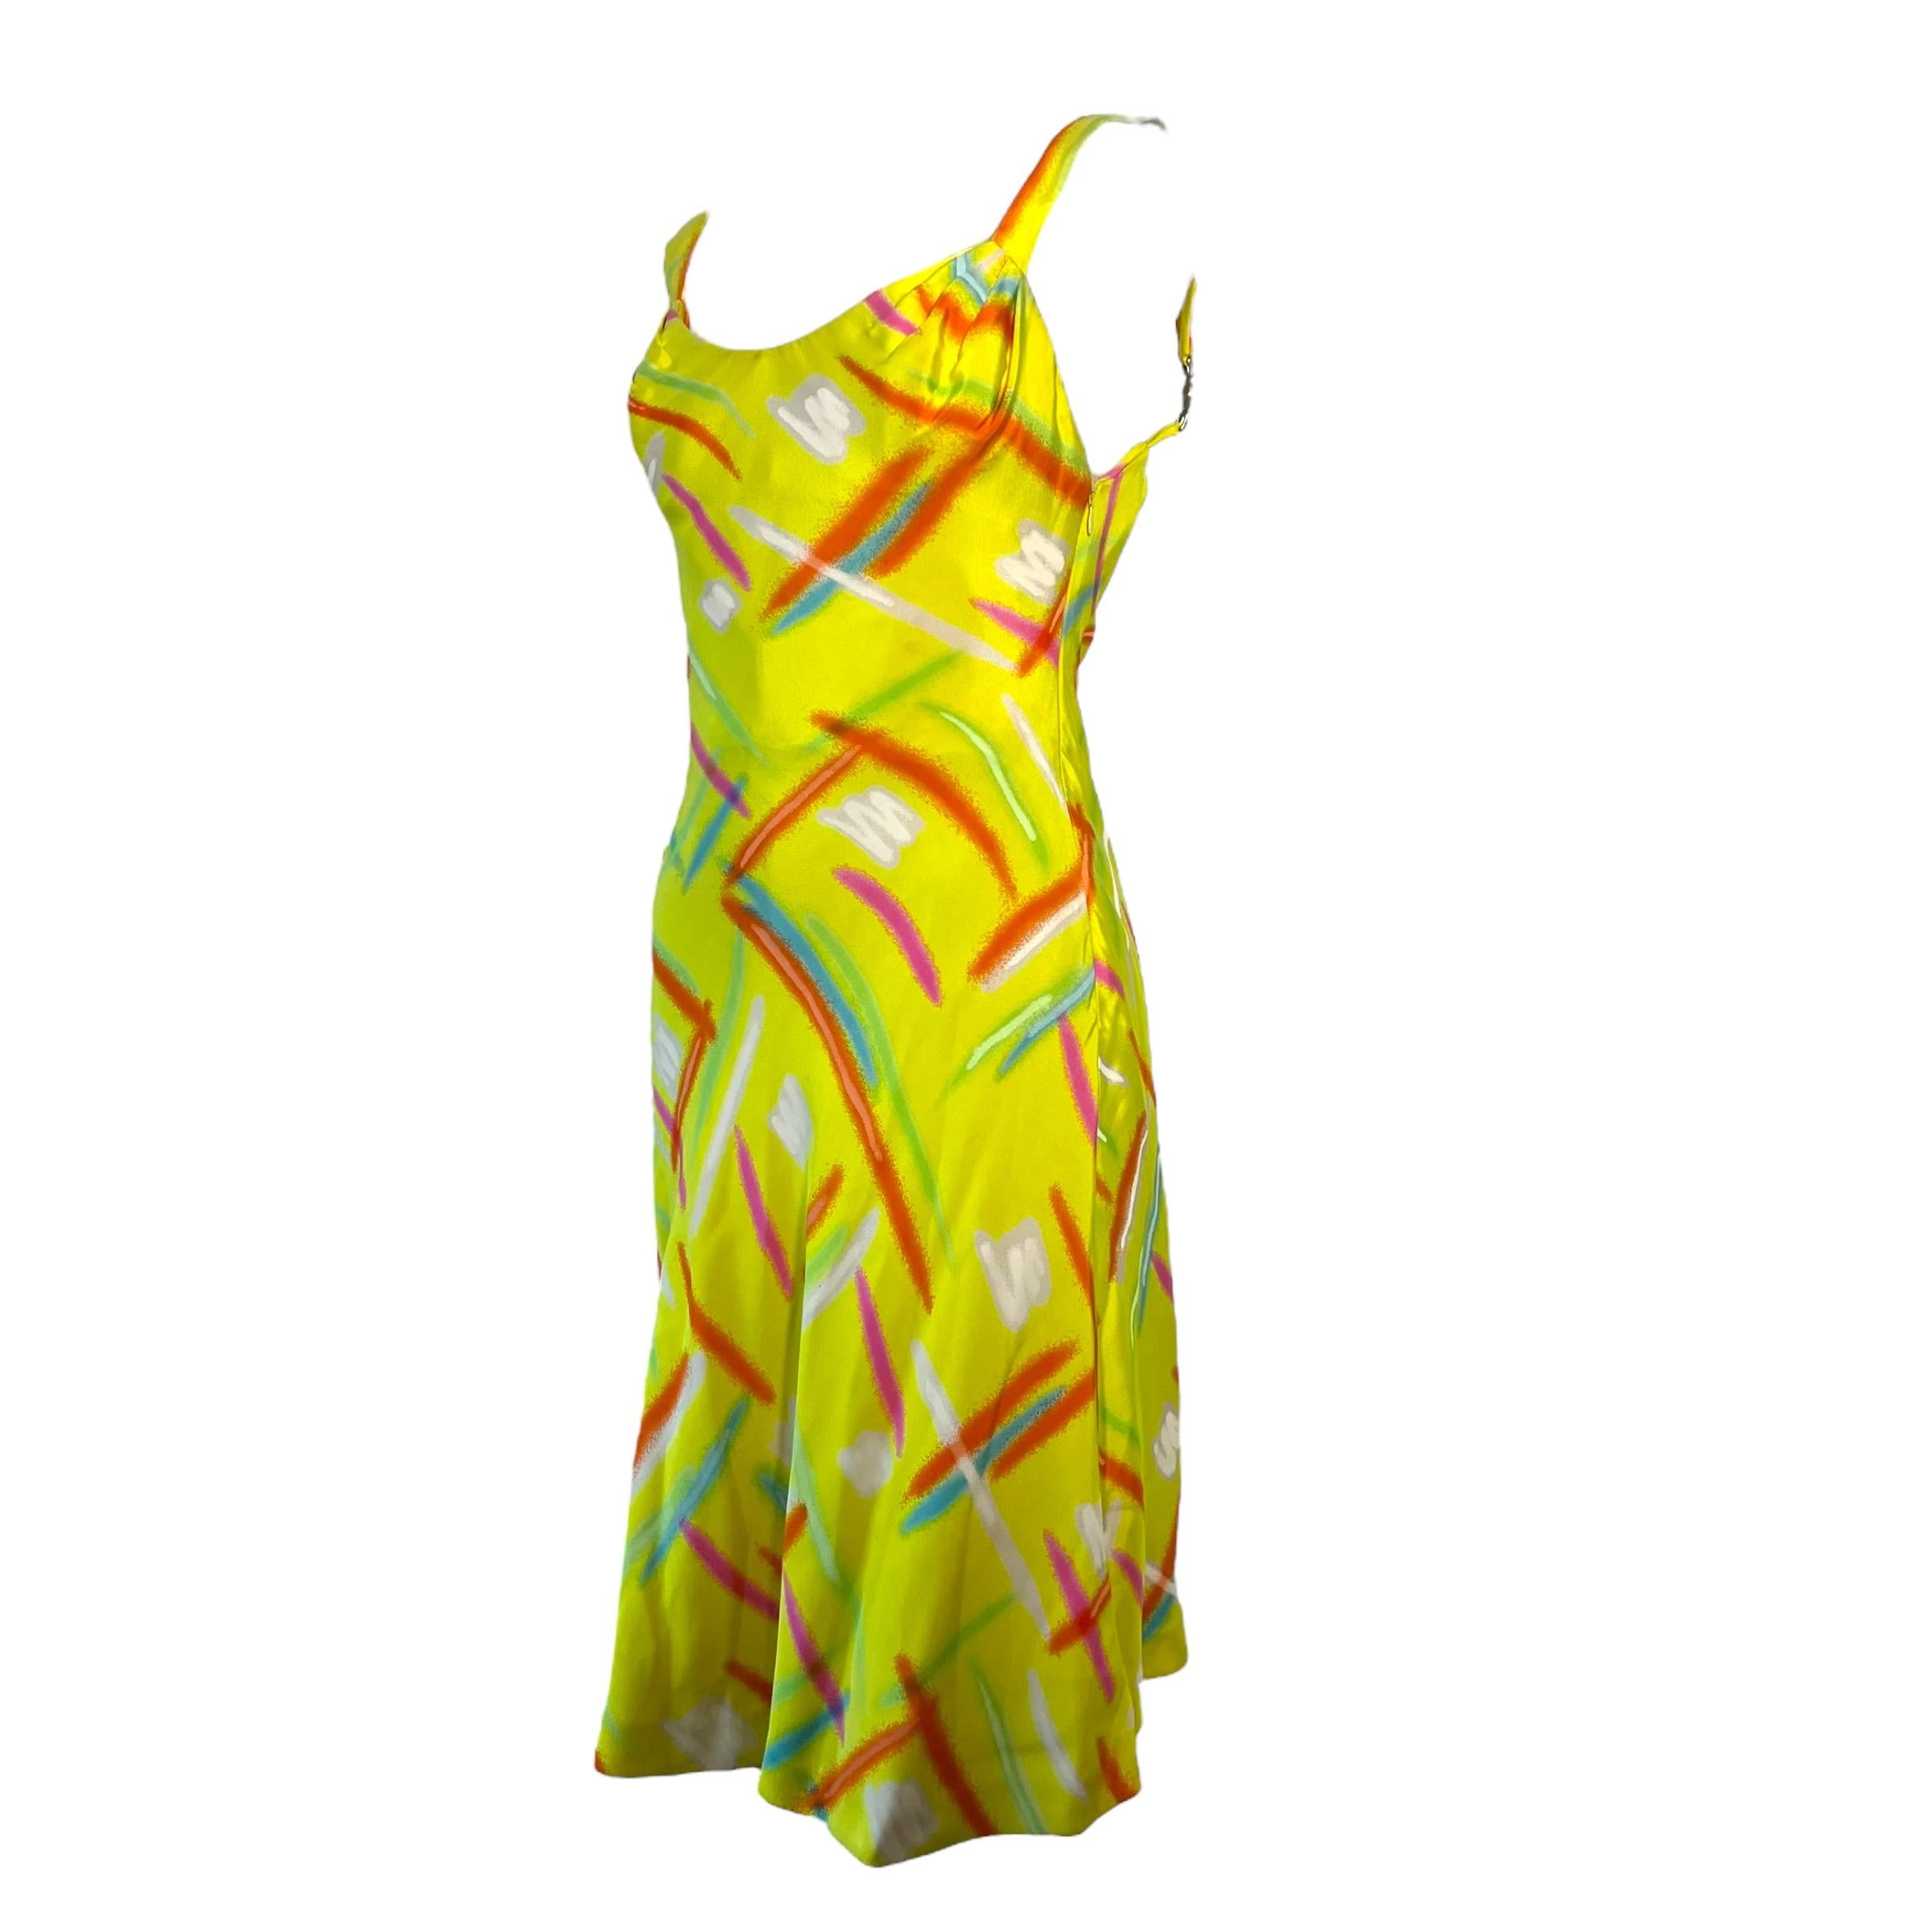 

Robe de la Collectional de Gianni Versace. Cette robe jaune vif présente des rayures néon sur toute sa surface et est ornée de l'emblématique méduse au niveau des bretelles.

Taille : IT42, circa S-M

Condit : 9/10